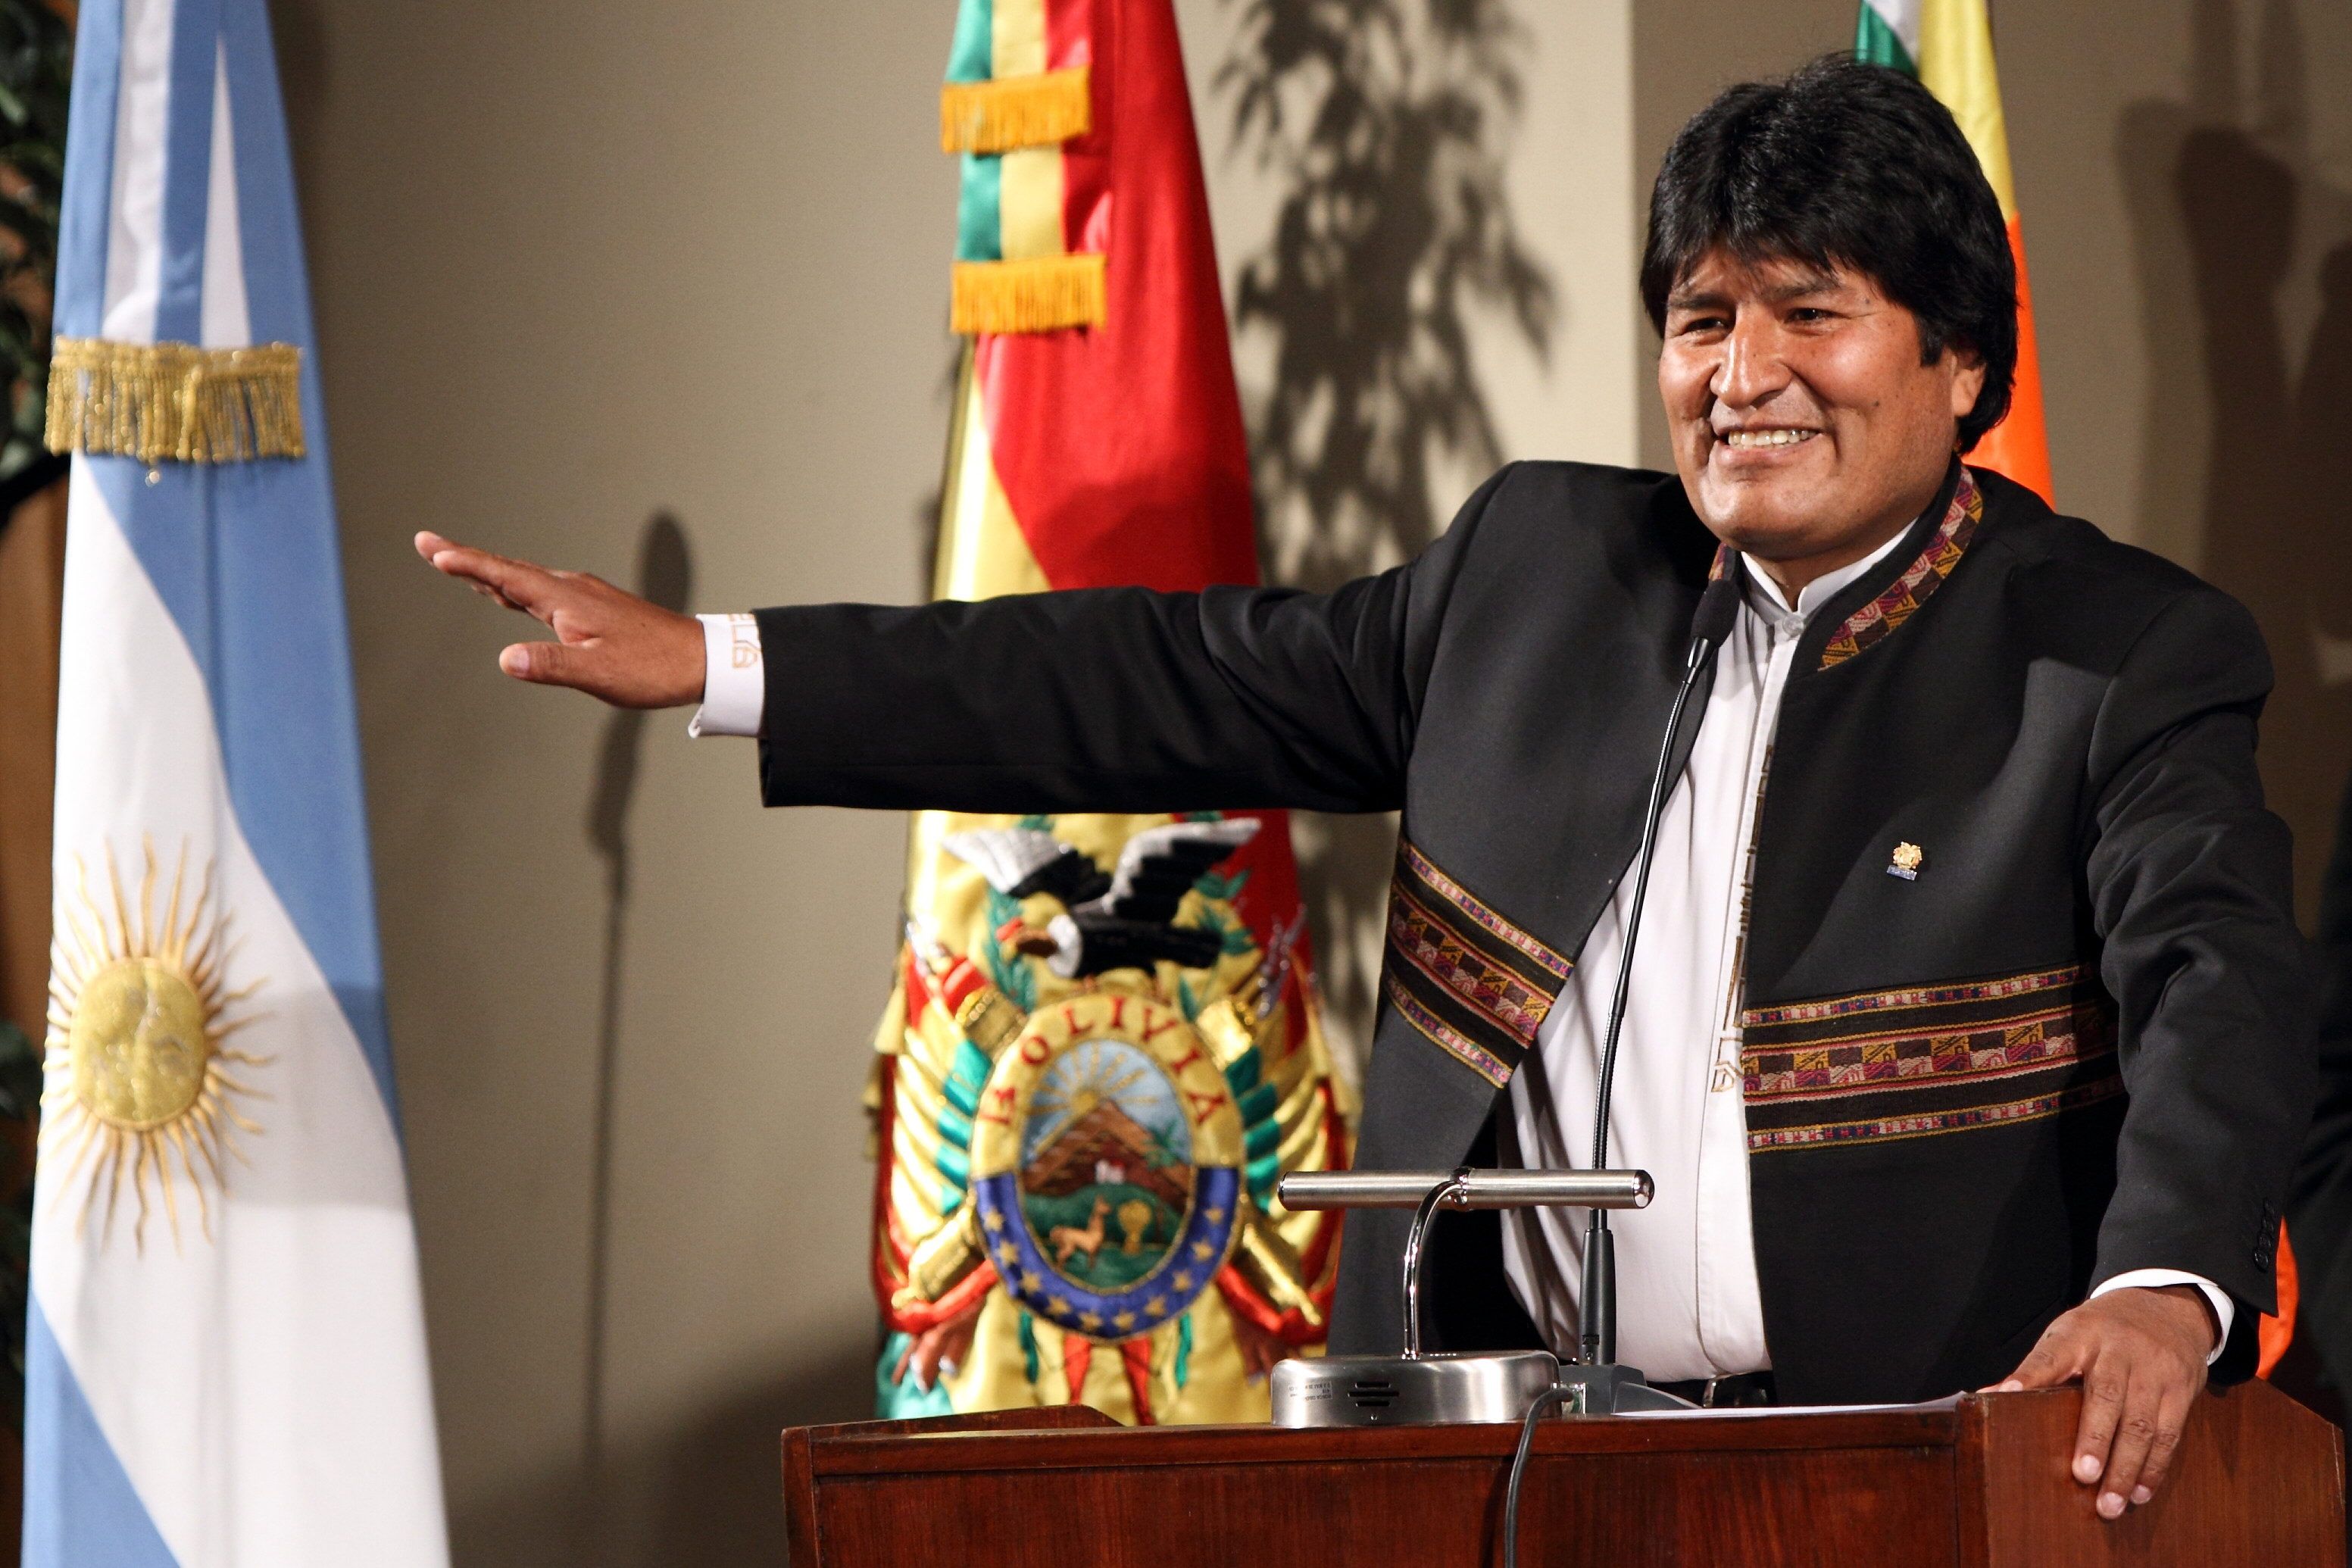 El presidente Evo Morales anunciará la compra de un inmueble donde funcionará el Consulado de Bolivia en Argentina.